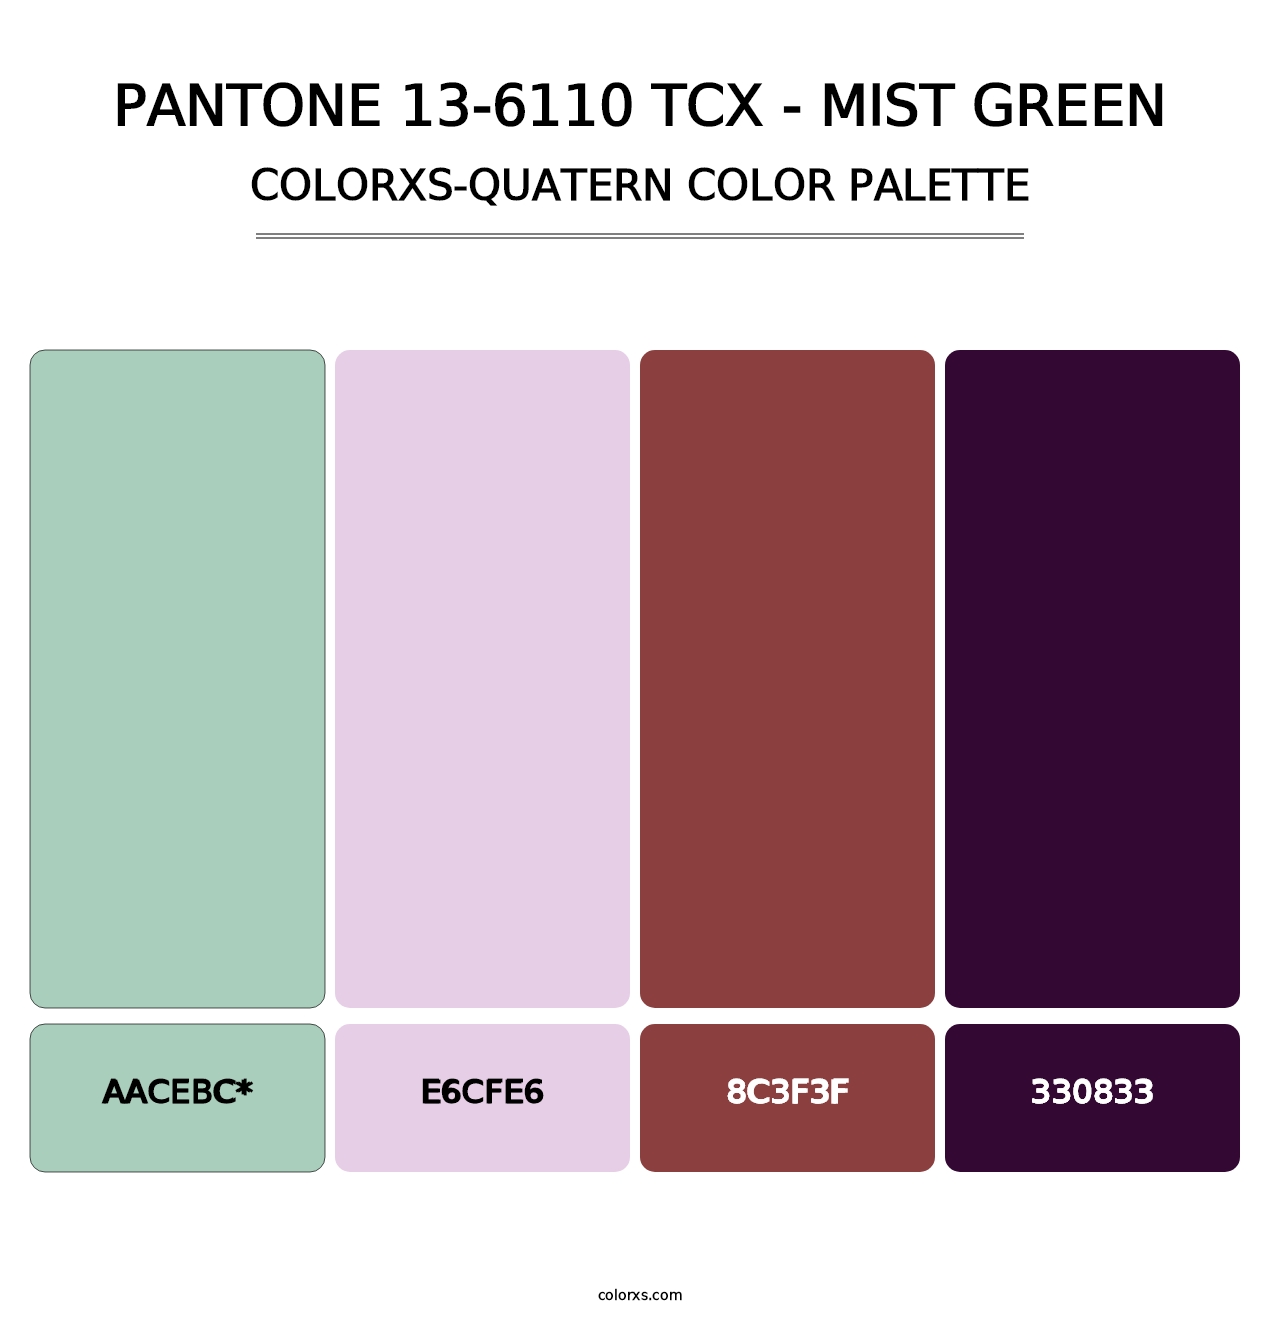 PANTONE 13-6110 TCX - Mist Green - Colorxs Quatern Palette